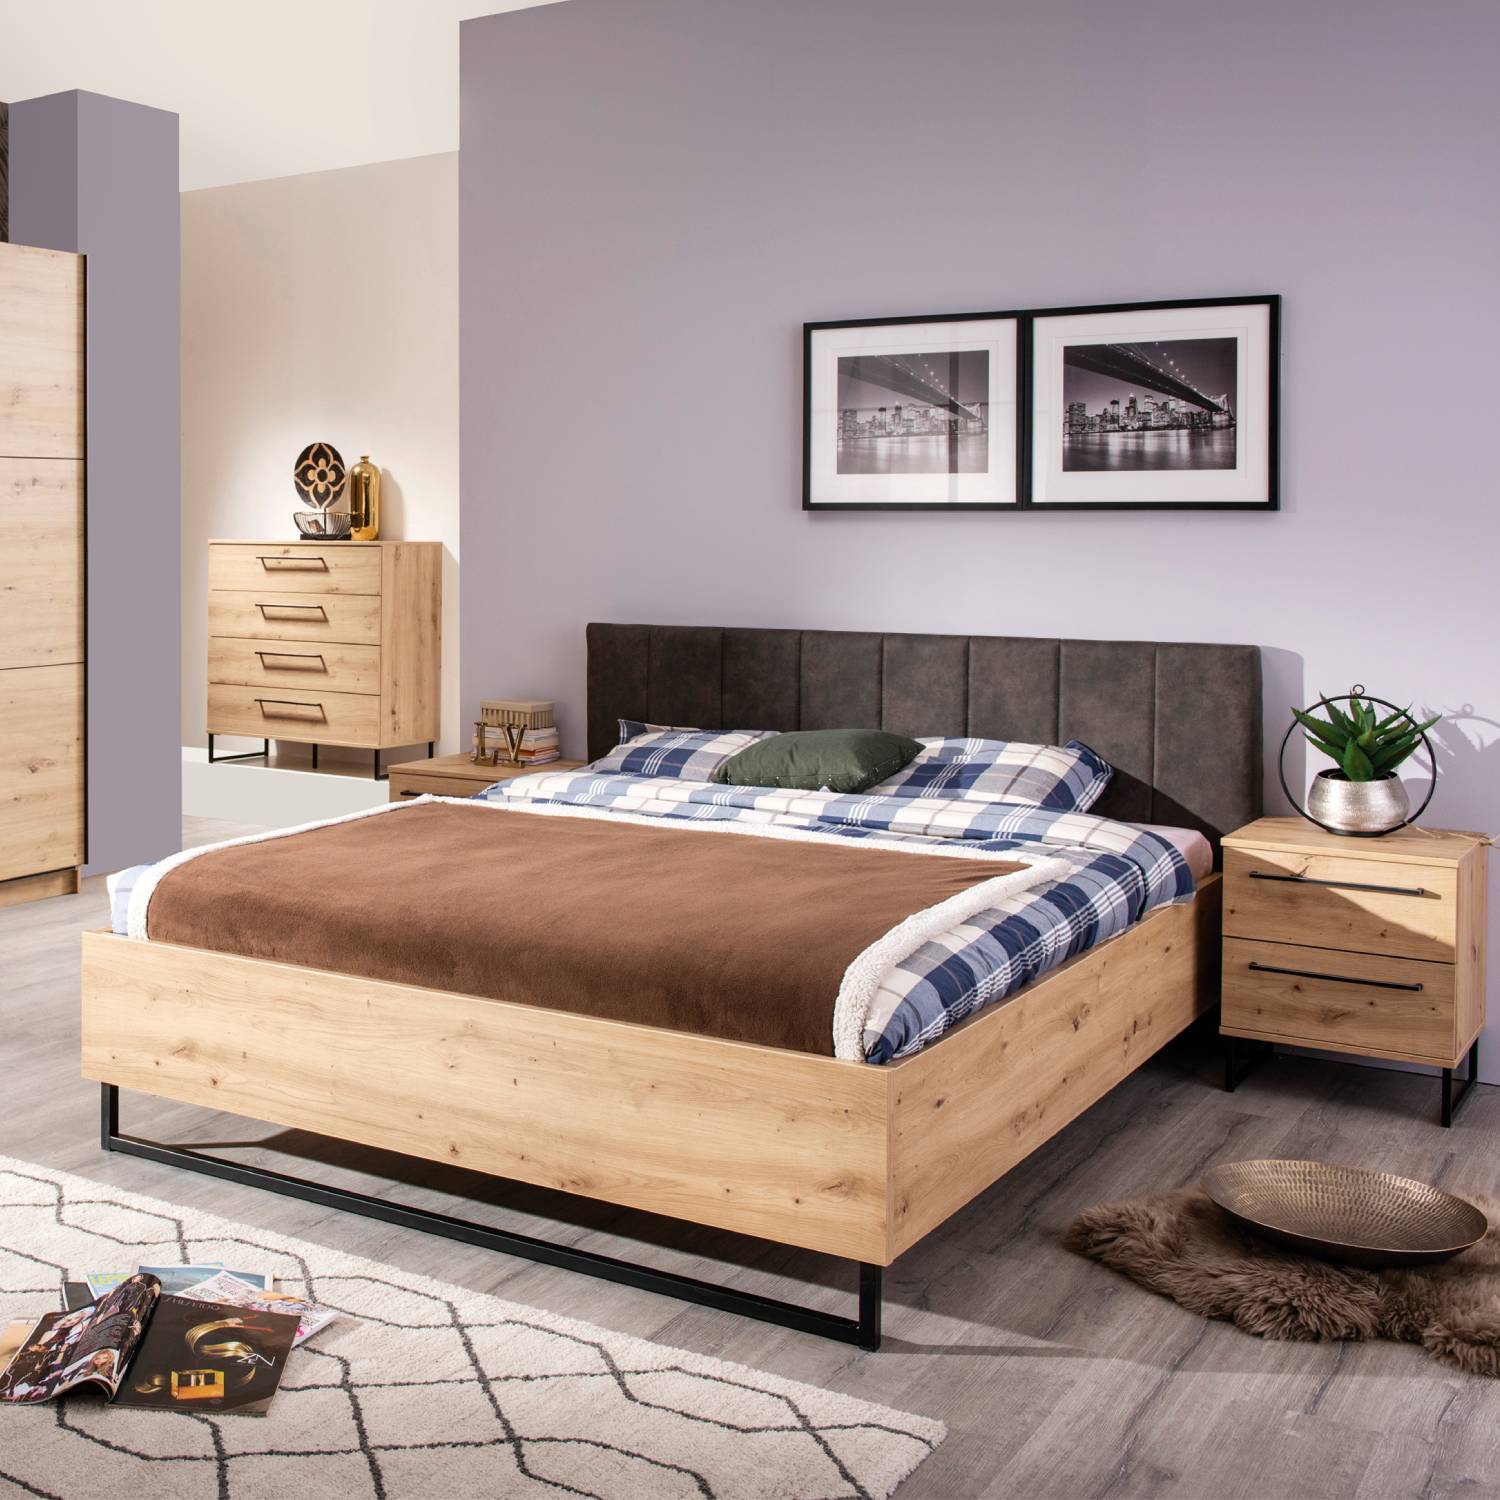 Doppelbett Holzbett Polsterbett 160 180 cm Bett Lattenrost Eiche Stoff Grau Industrial Style